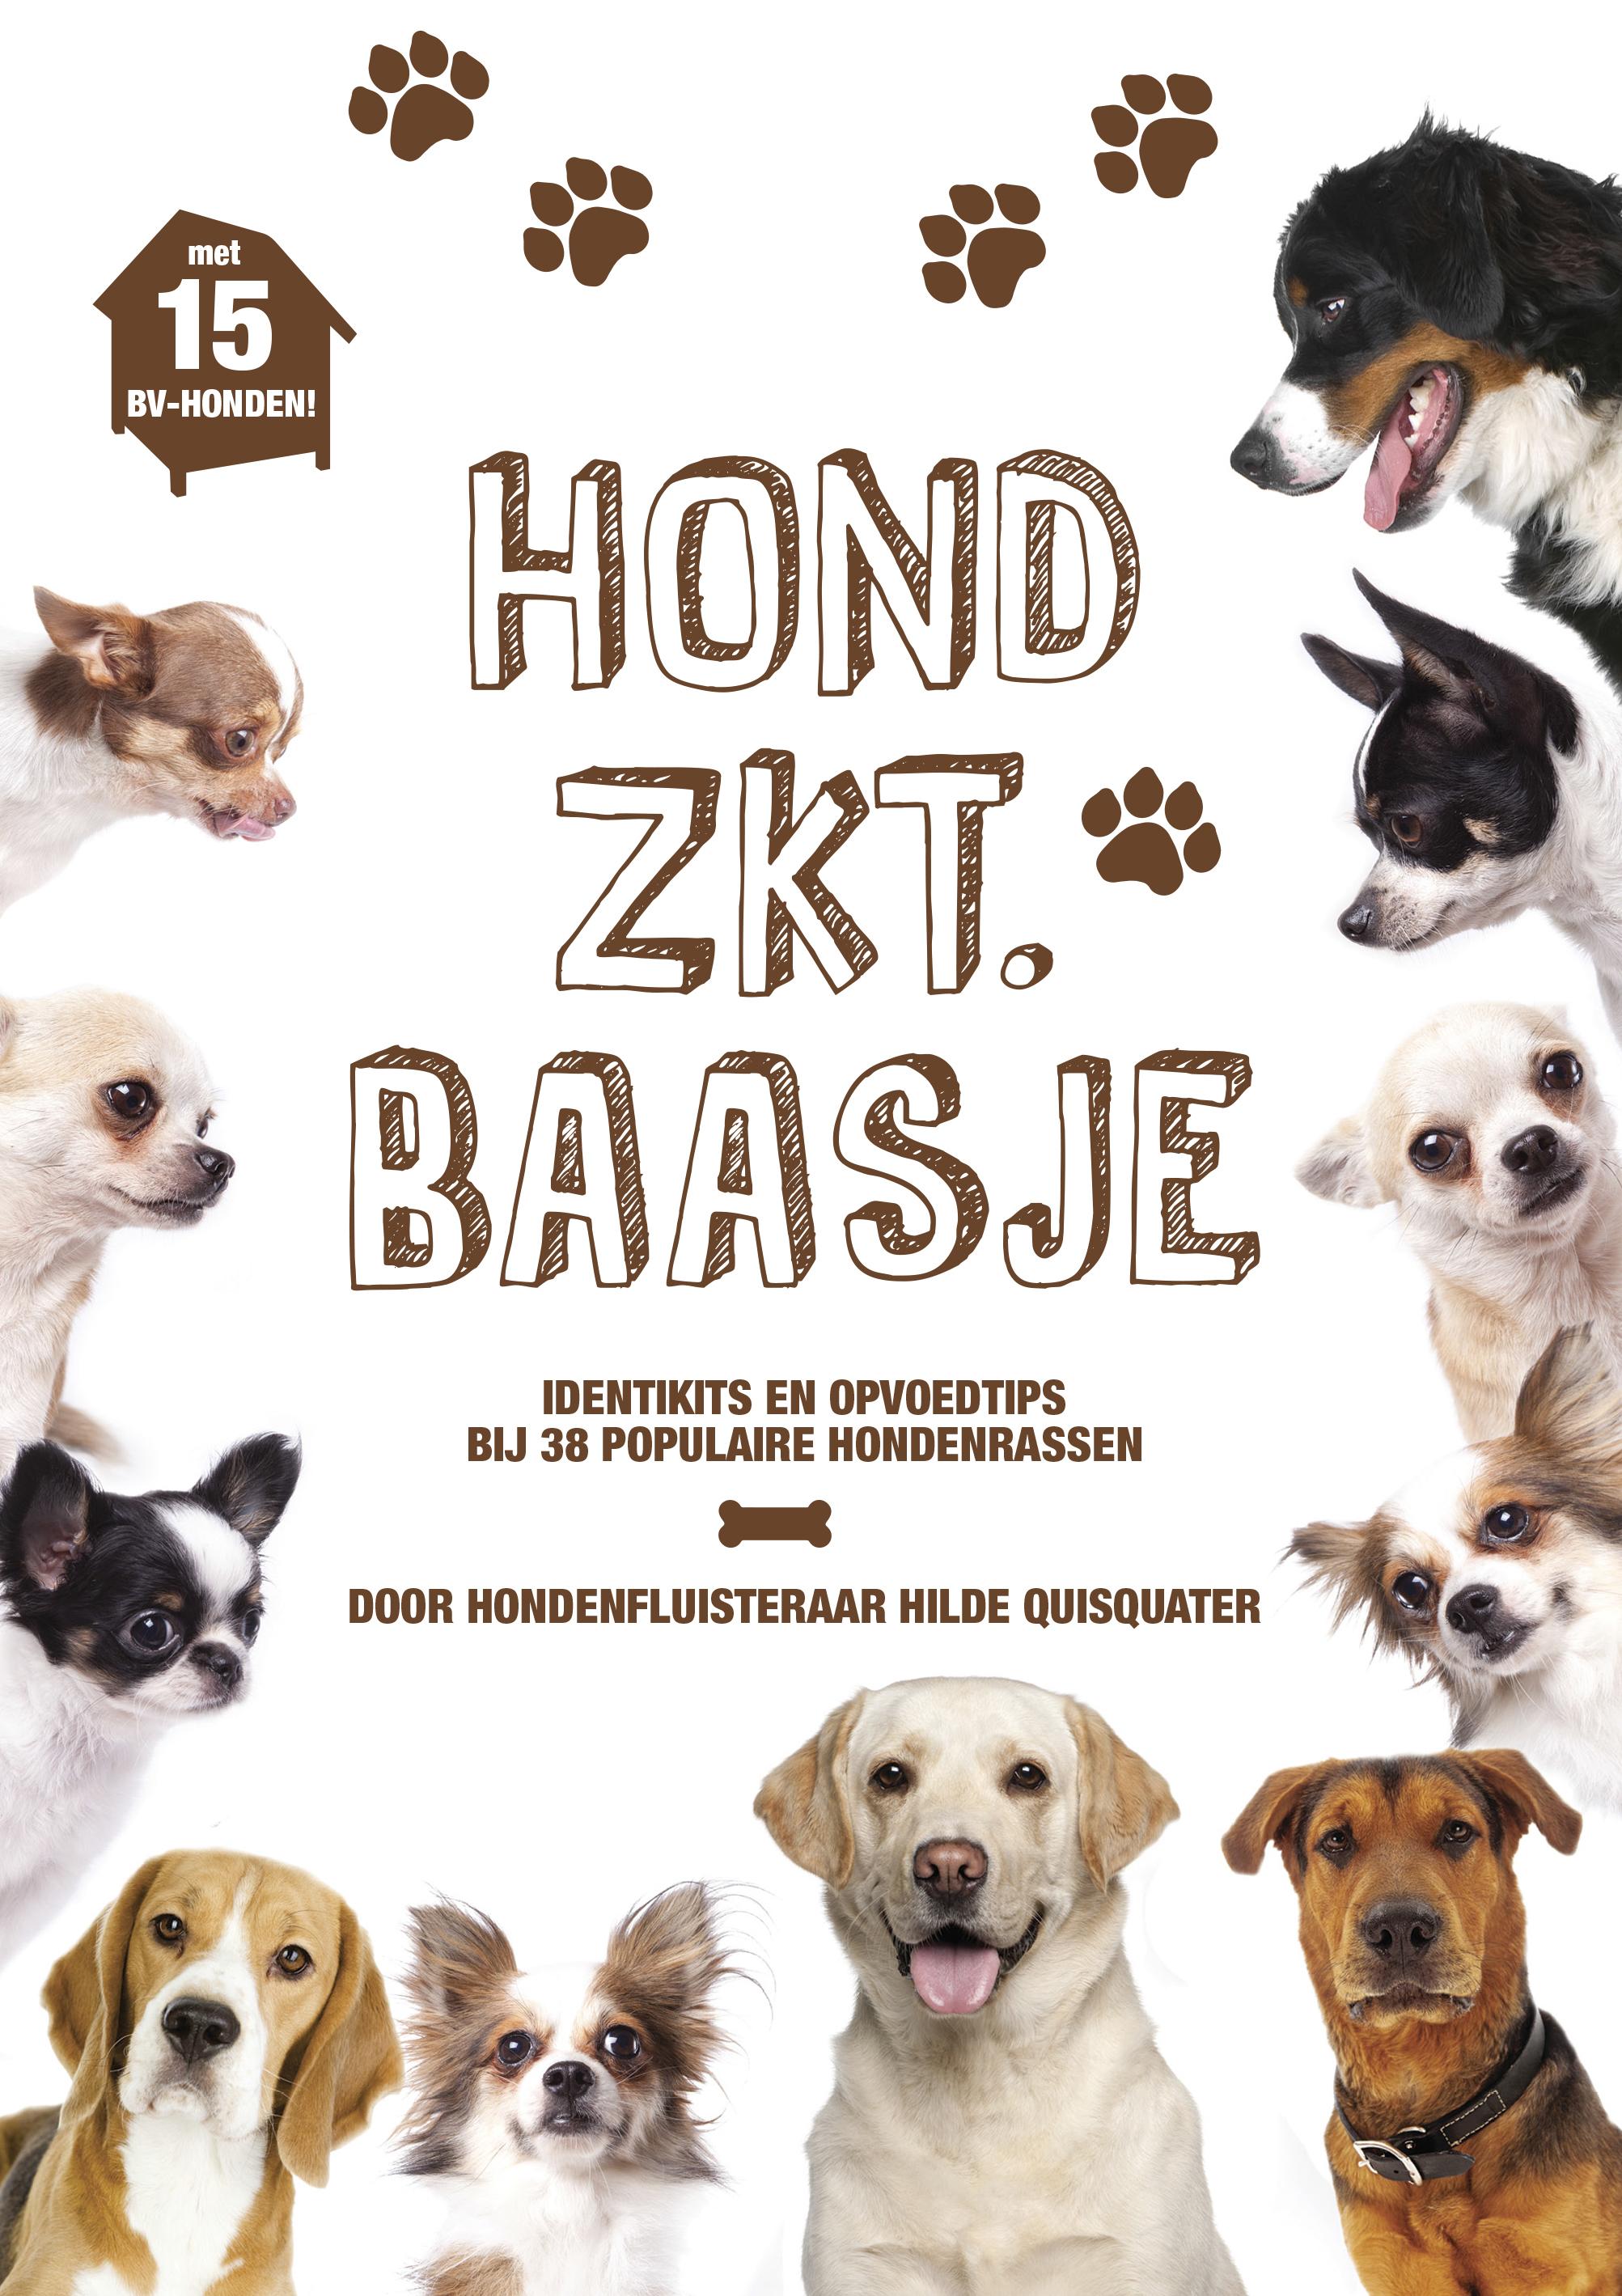 boek met opvoedtips per ras ‘Hond zoekt baasje’ € 5,90